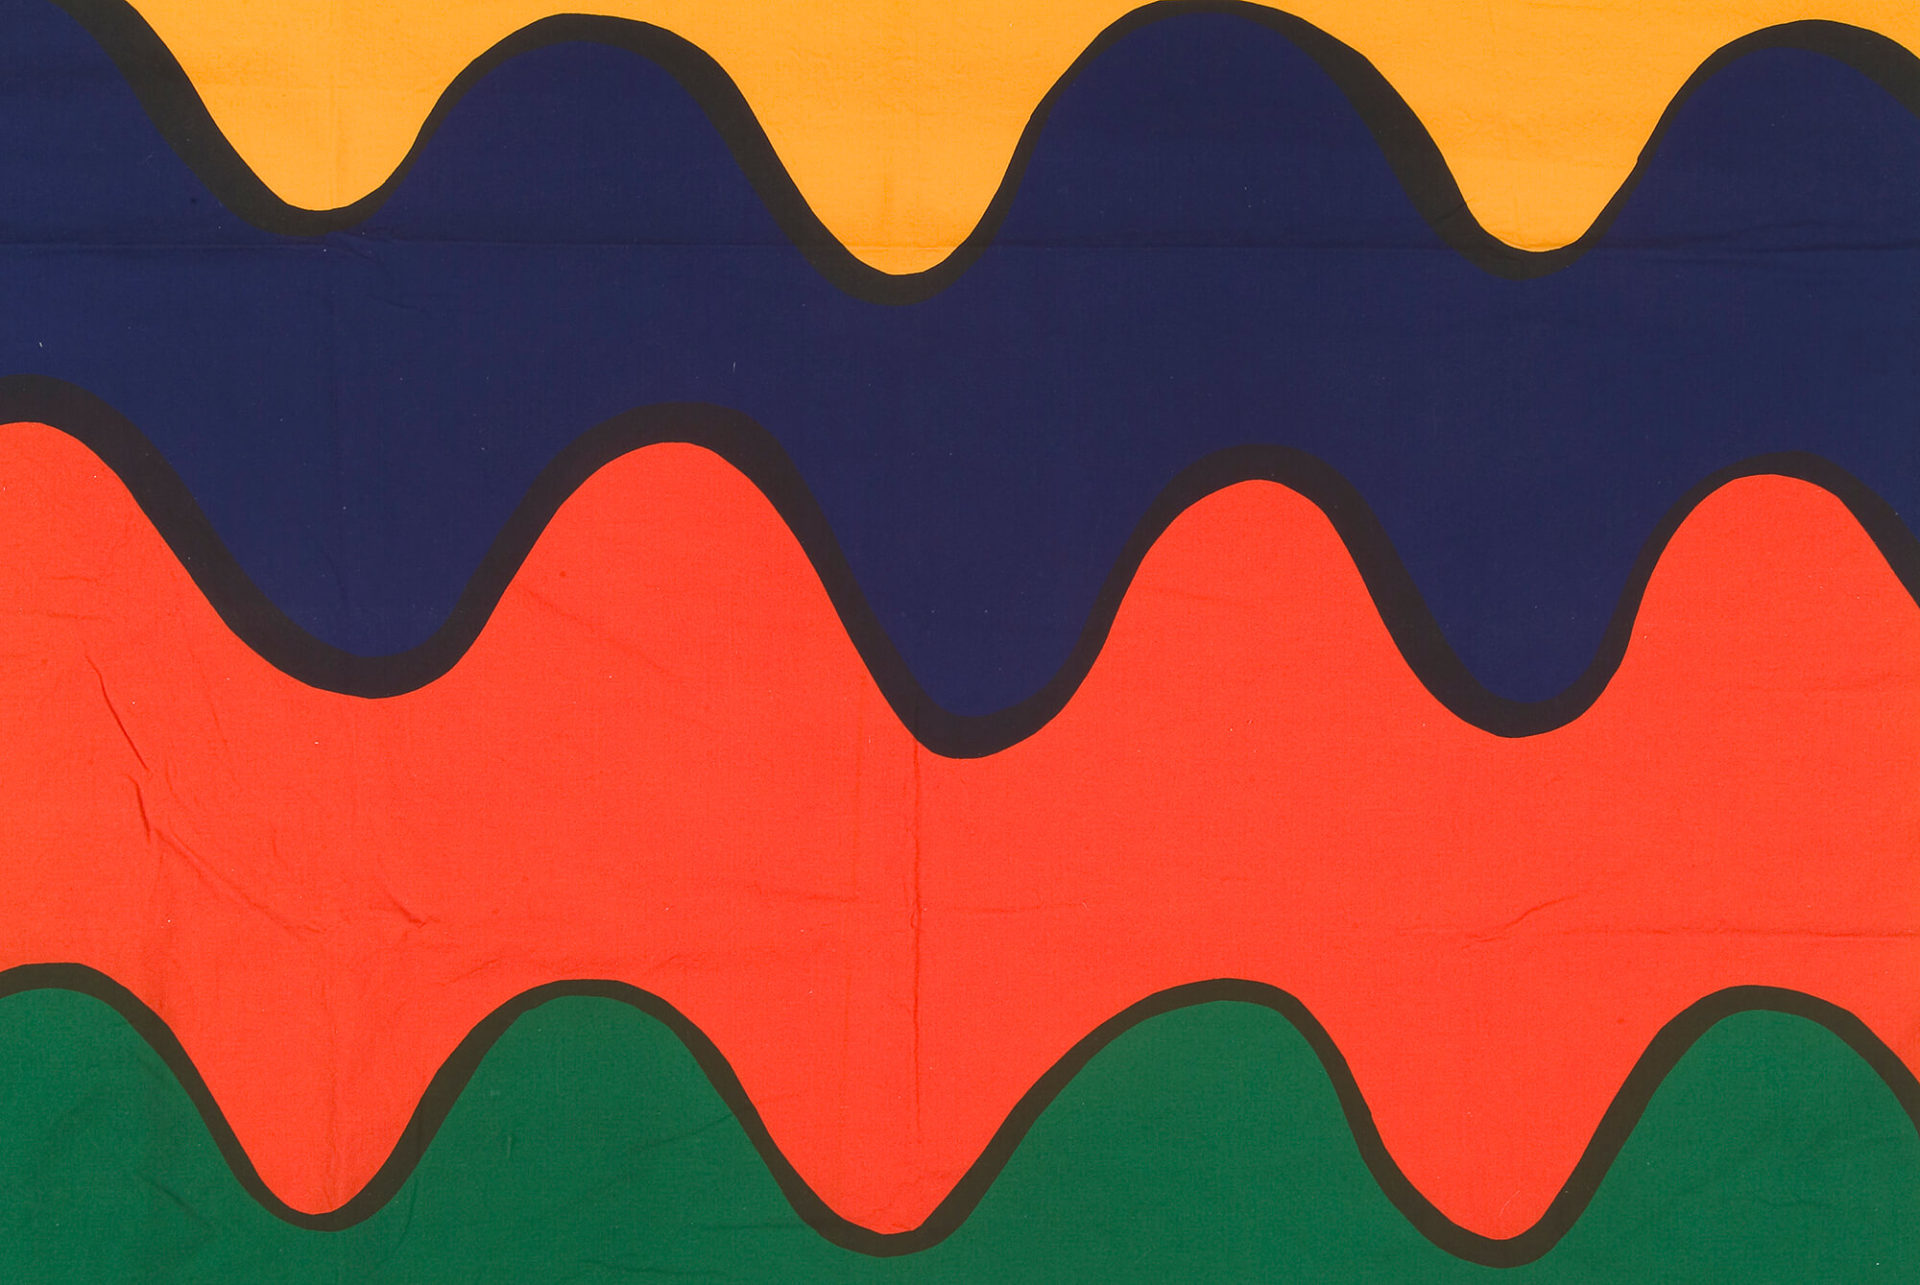 Étoffe aux larges bandes horizontales ondulées jaune, bleu, orange et vert, bordées de contours noirs.